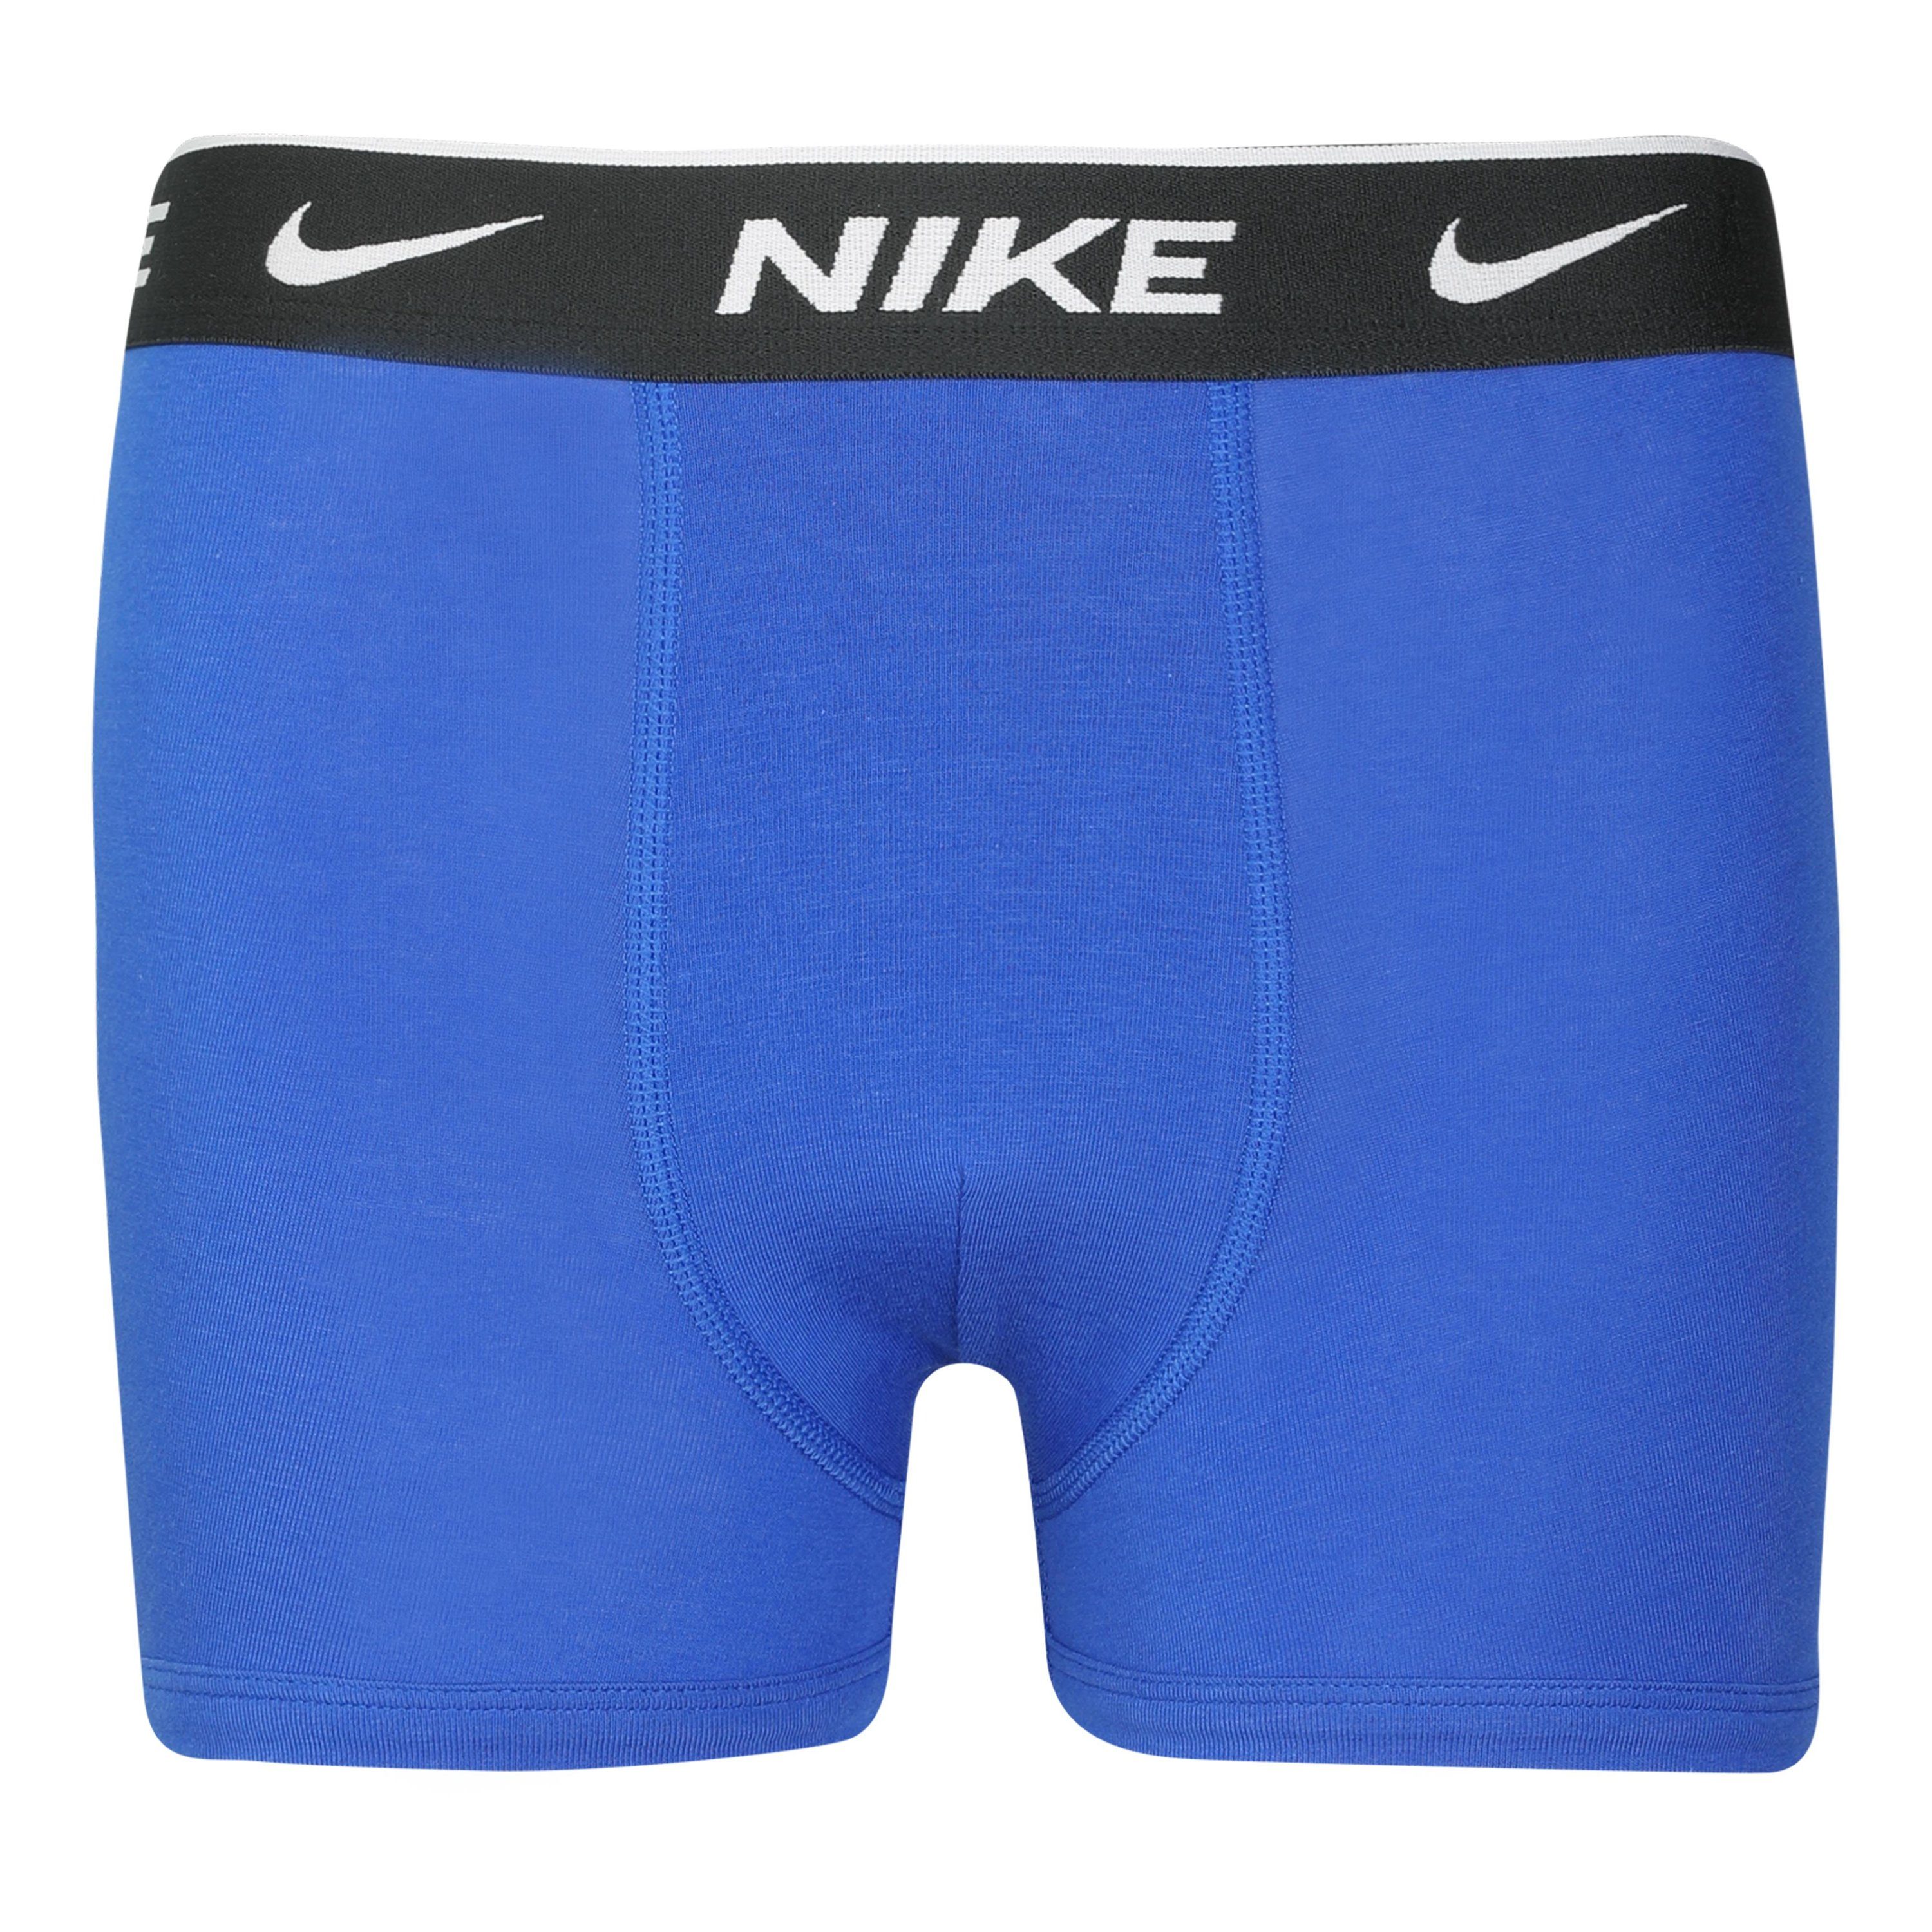 Nike Sportswear Boxershorts EVERYDAY schwarz COTTON 3er-Pack) BRIEF Kinder 3-St., 3PK blau, anthrazit, BOXER für (Packung